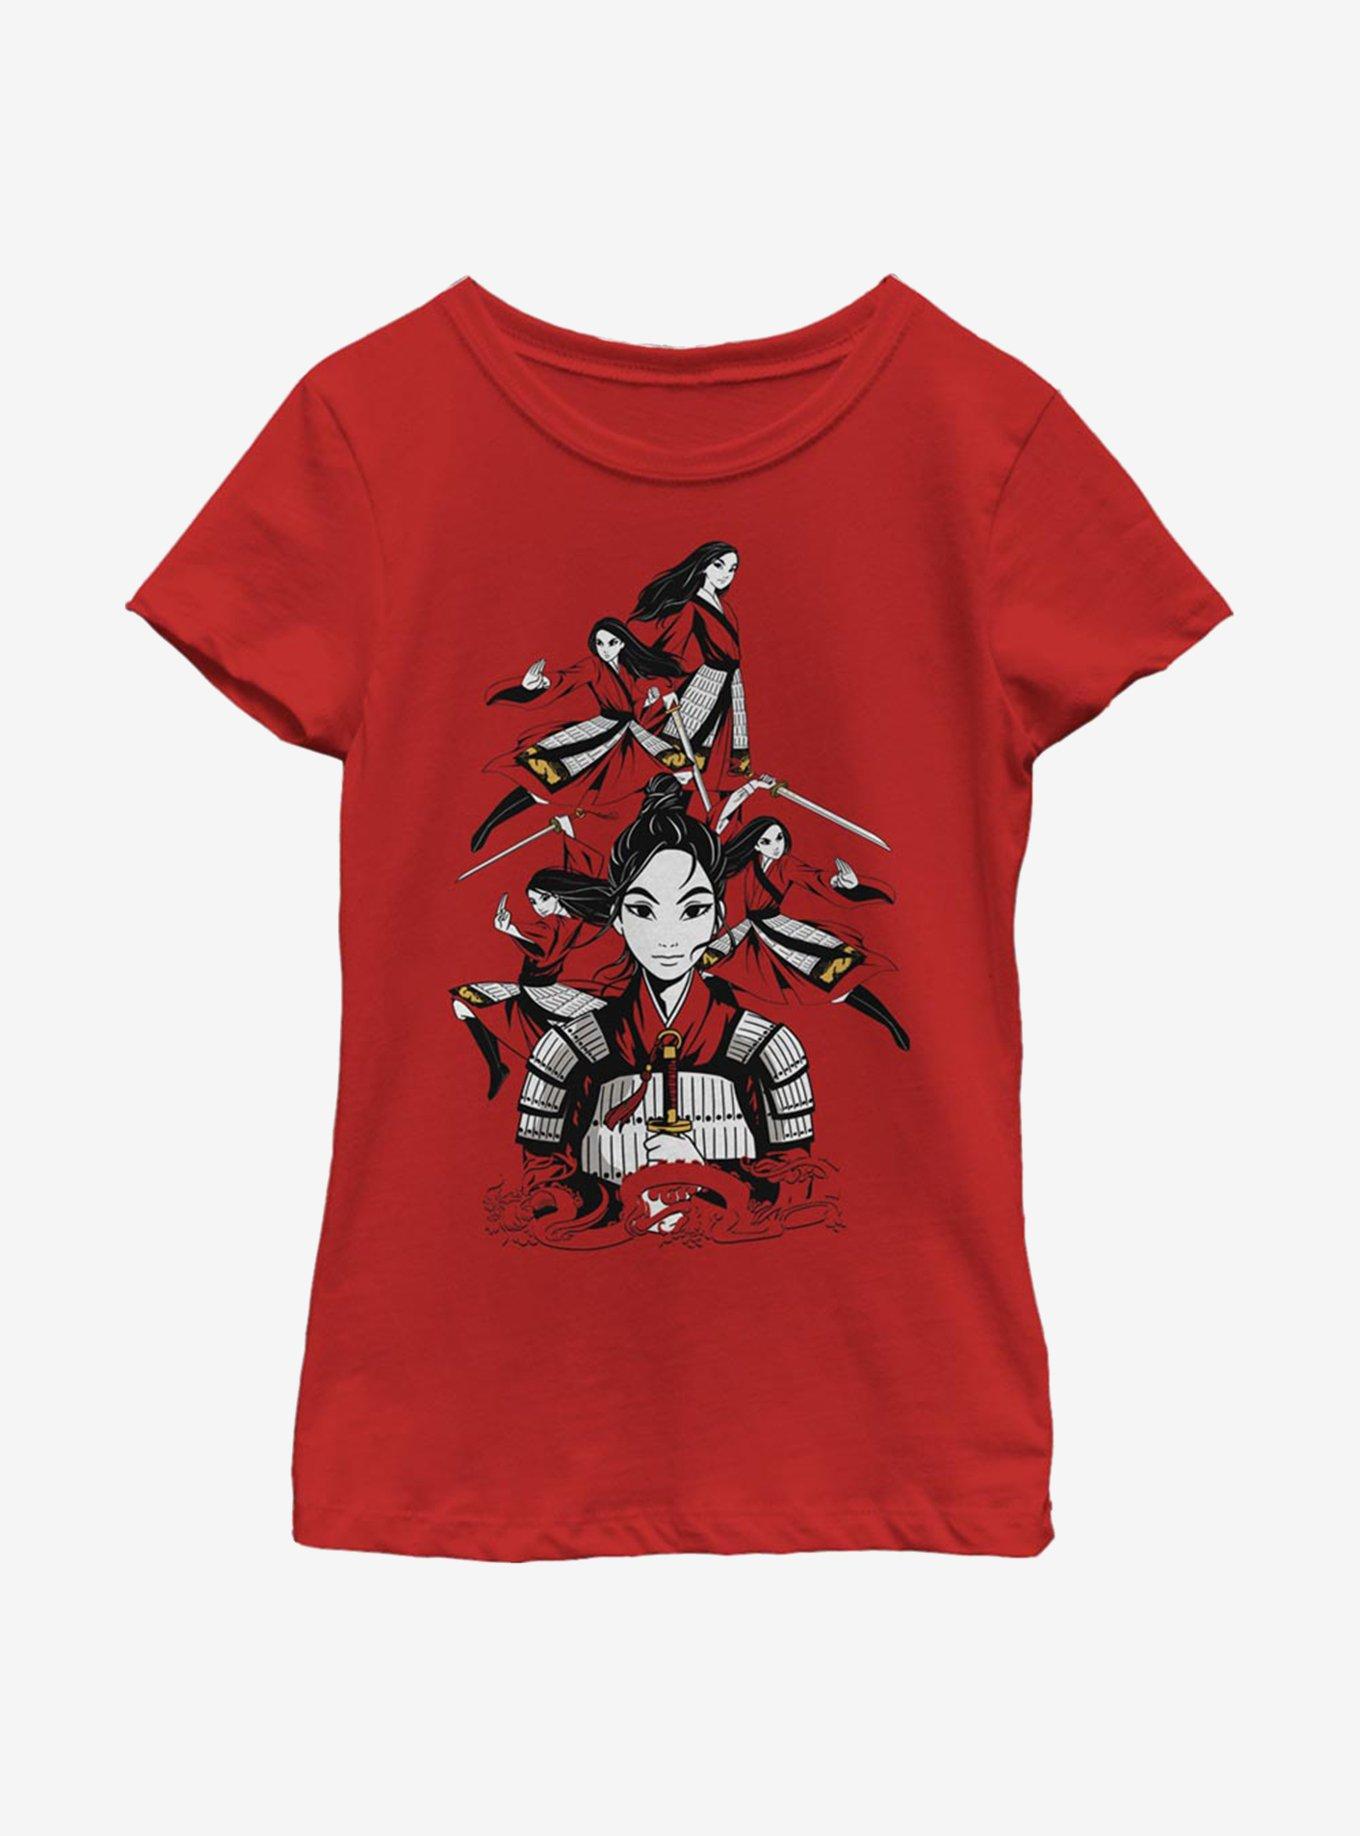 Disney Mulan Poses Youth Girls T-Shirt, RED, hi-res